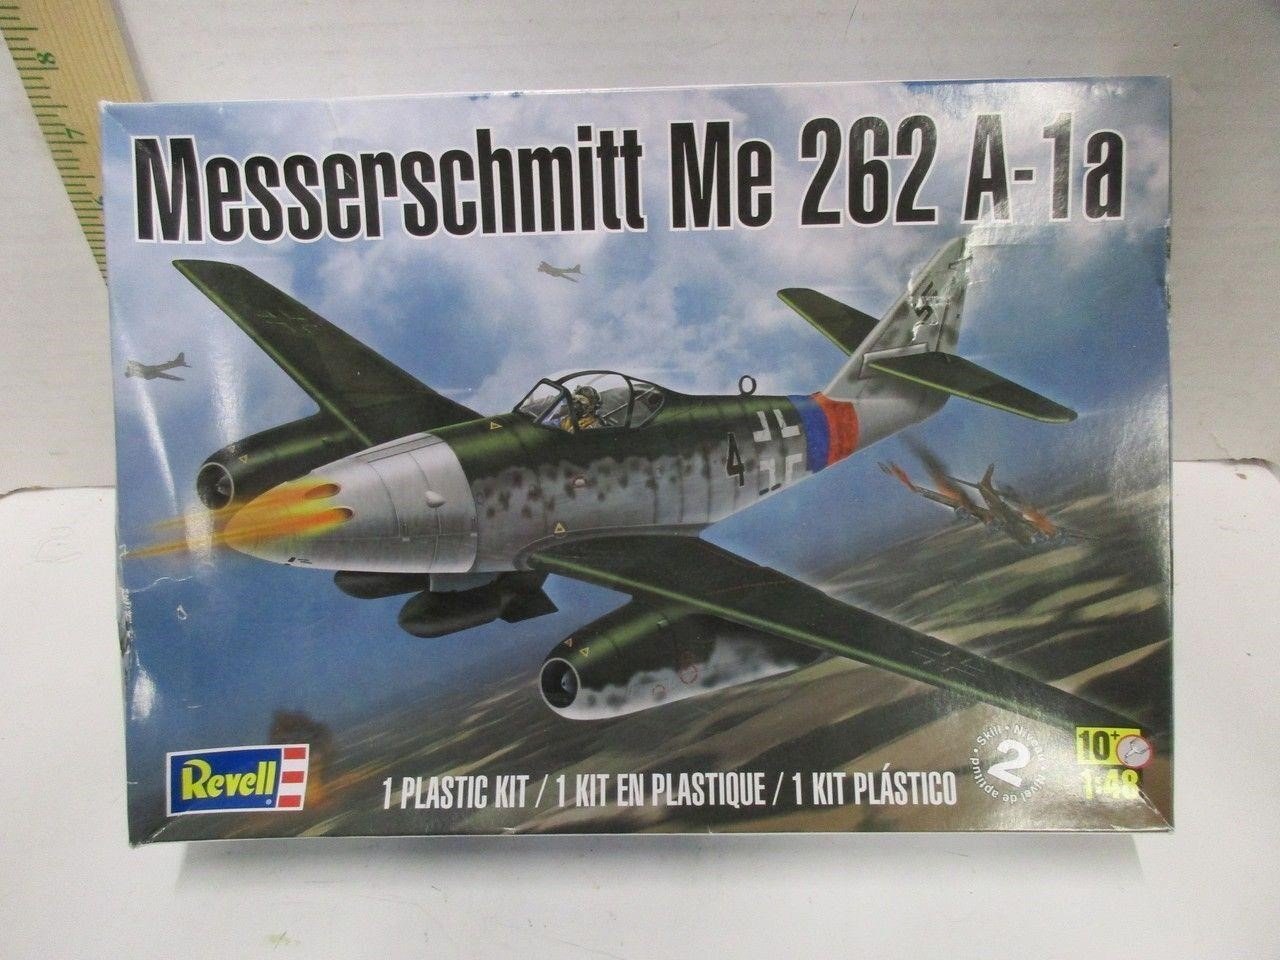 Revell Messerschmitt Me 262 A-1a Model